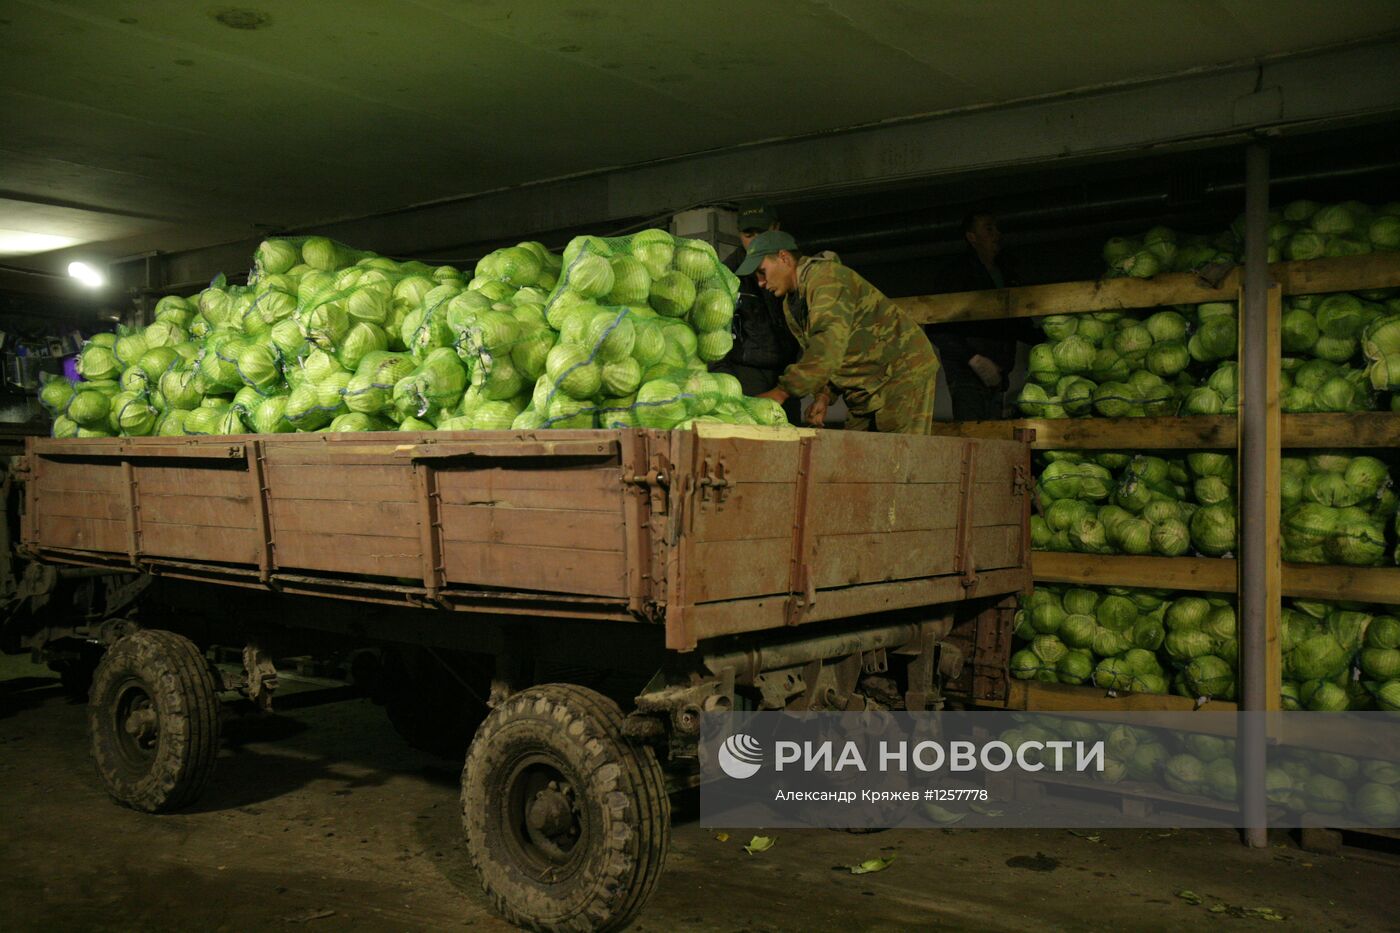 Уборка урожая капусты в Новосибирской области